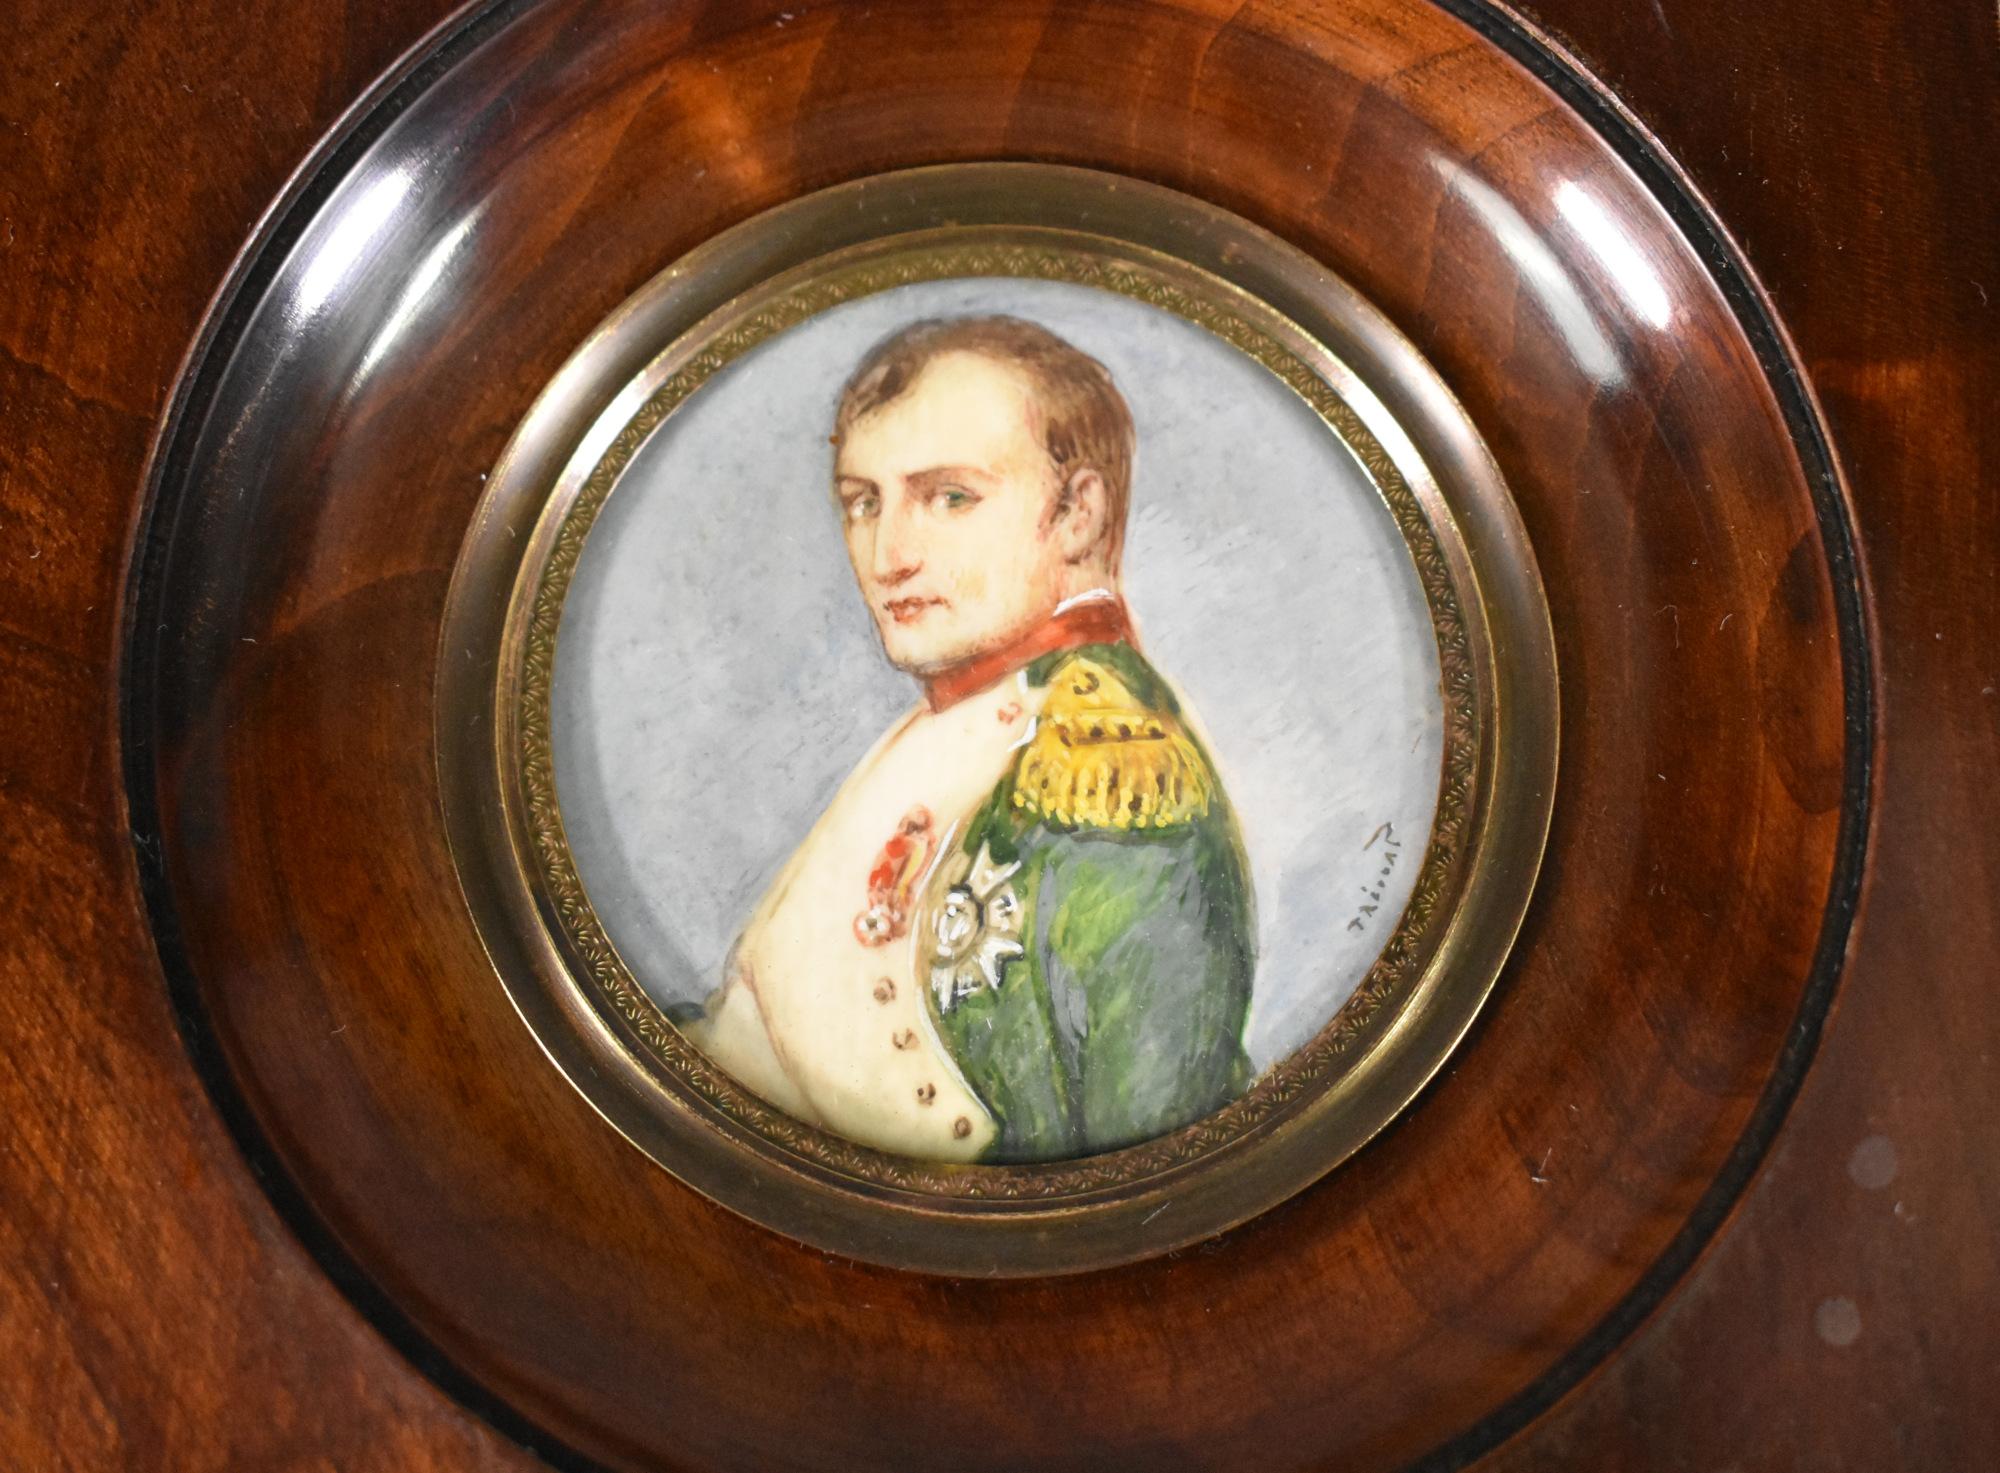 Miniatur-Porträtmalerei von Napoleon von Prévost aus dem neunzehnten Jahrhundert unterzeichnet. 

Der Rahmen ist aus massivem Mahagoniholz, gewölbt und hochglanzpoliert.

Das gewölbte Klarglas wird von einer Messinglünette gehalten. 

Die